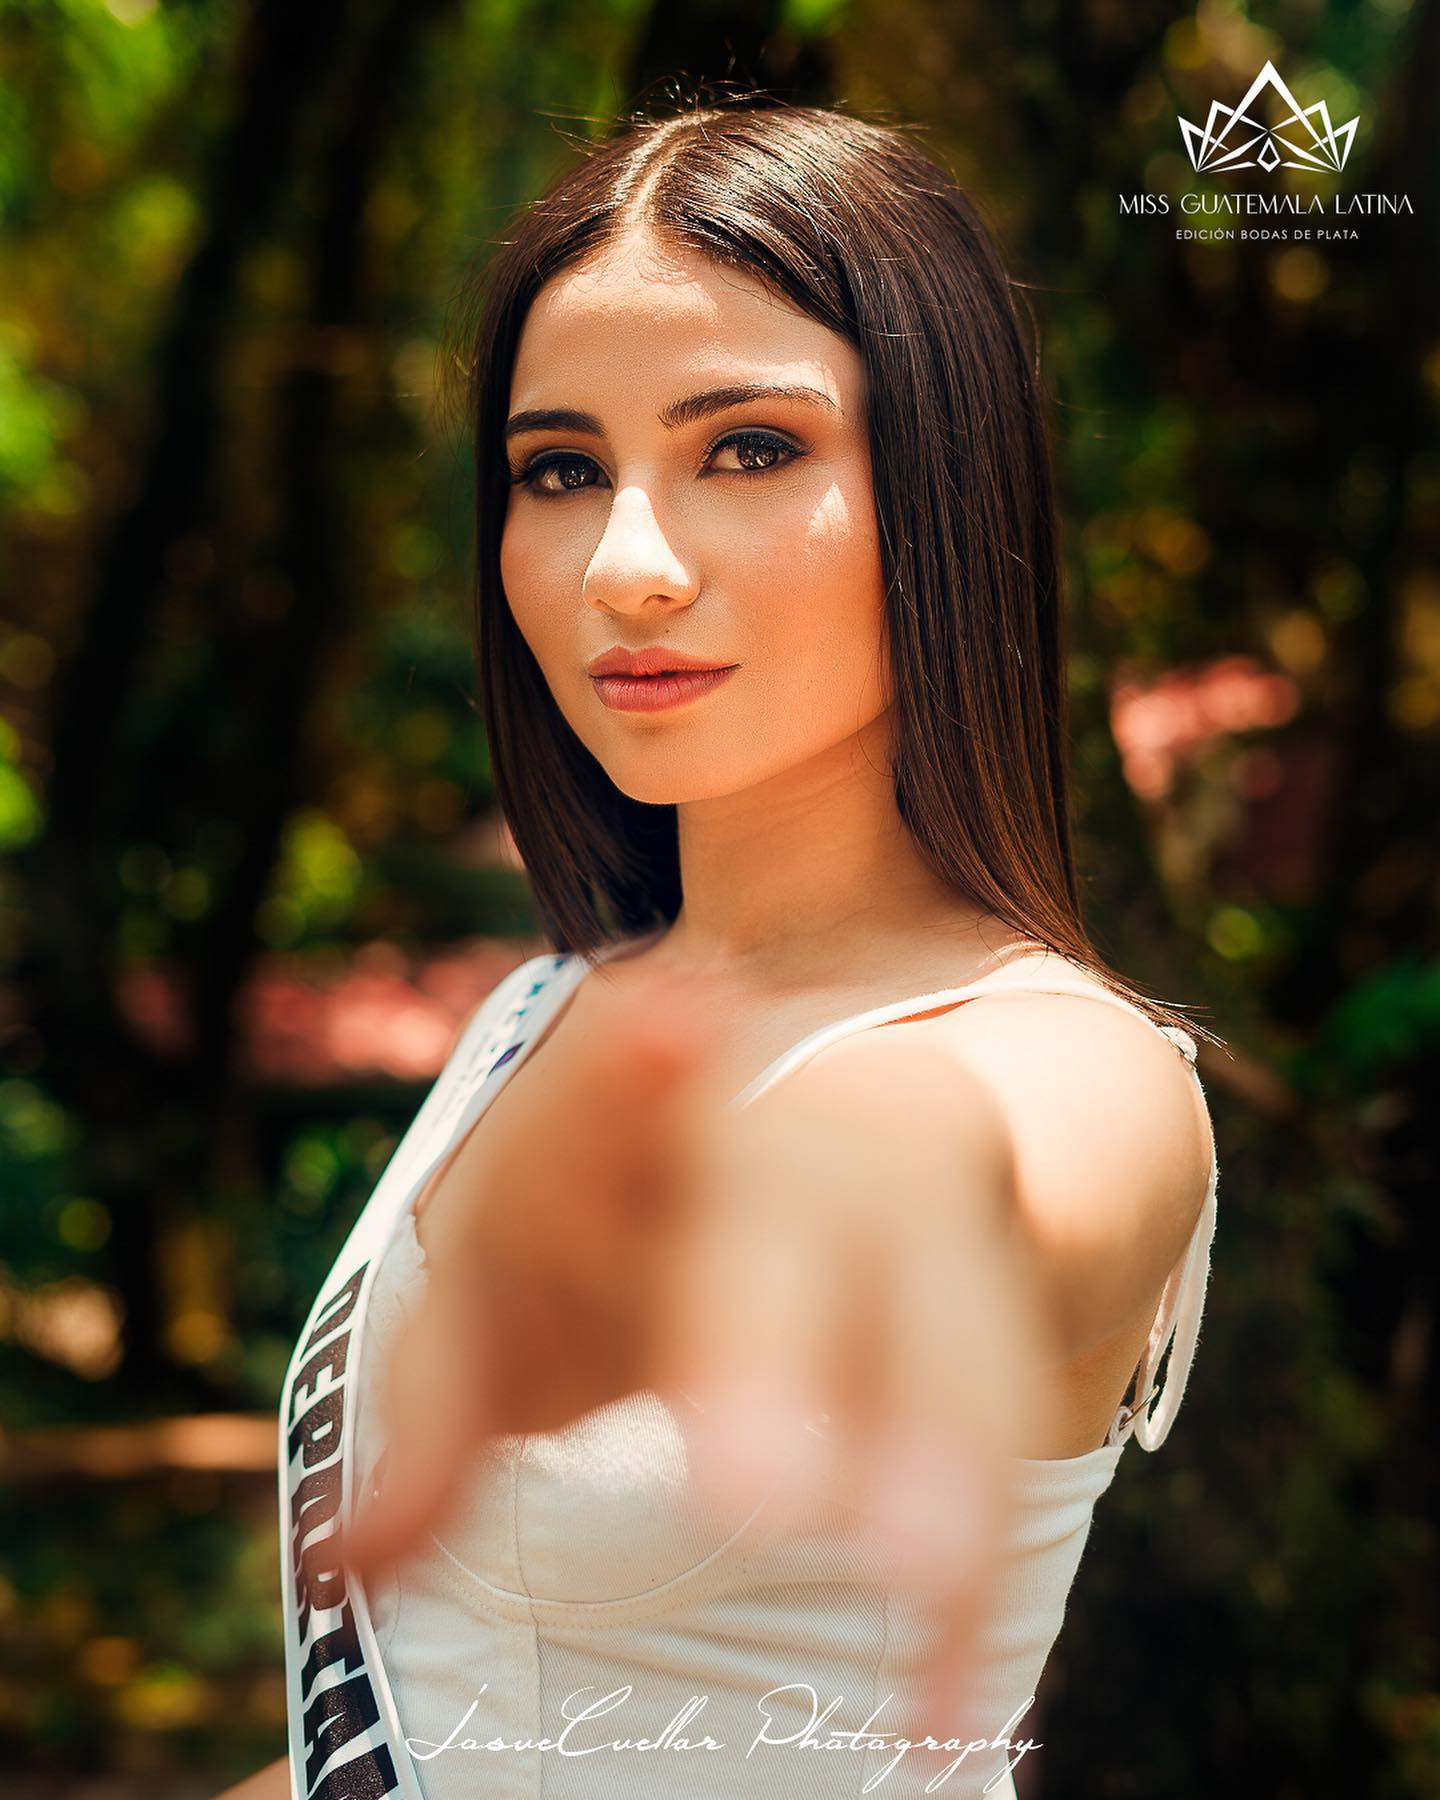 Latina - candidatas a miss guatemala latina 2021. final: 30 de abril. - Página 8 BFjbxj